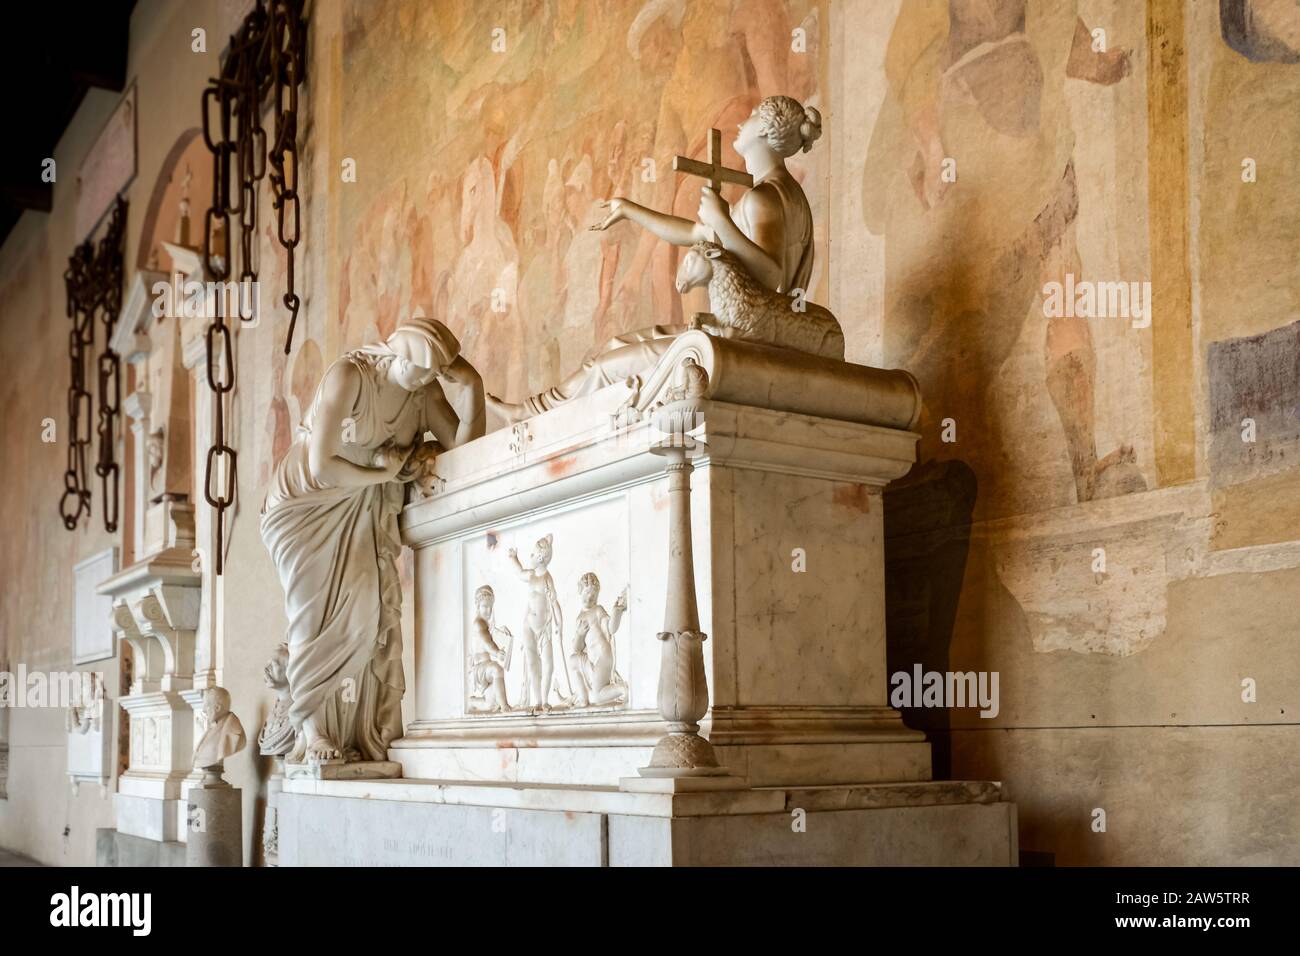 Le statue commemorano i morti nell'antica tomba e cimitero di Camposanto Monumentale sulla Piazza dei Miracoli nella città toscana di Pisa, Italia Foto Stock